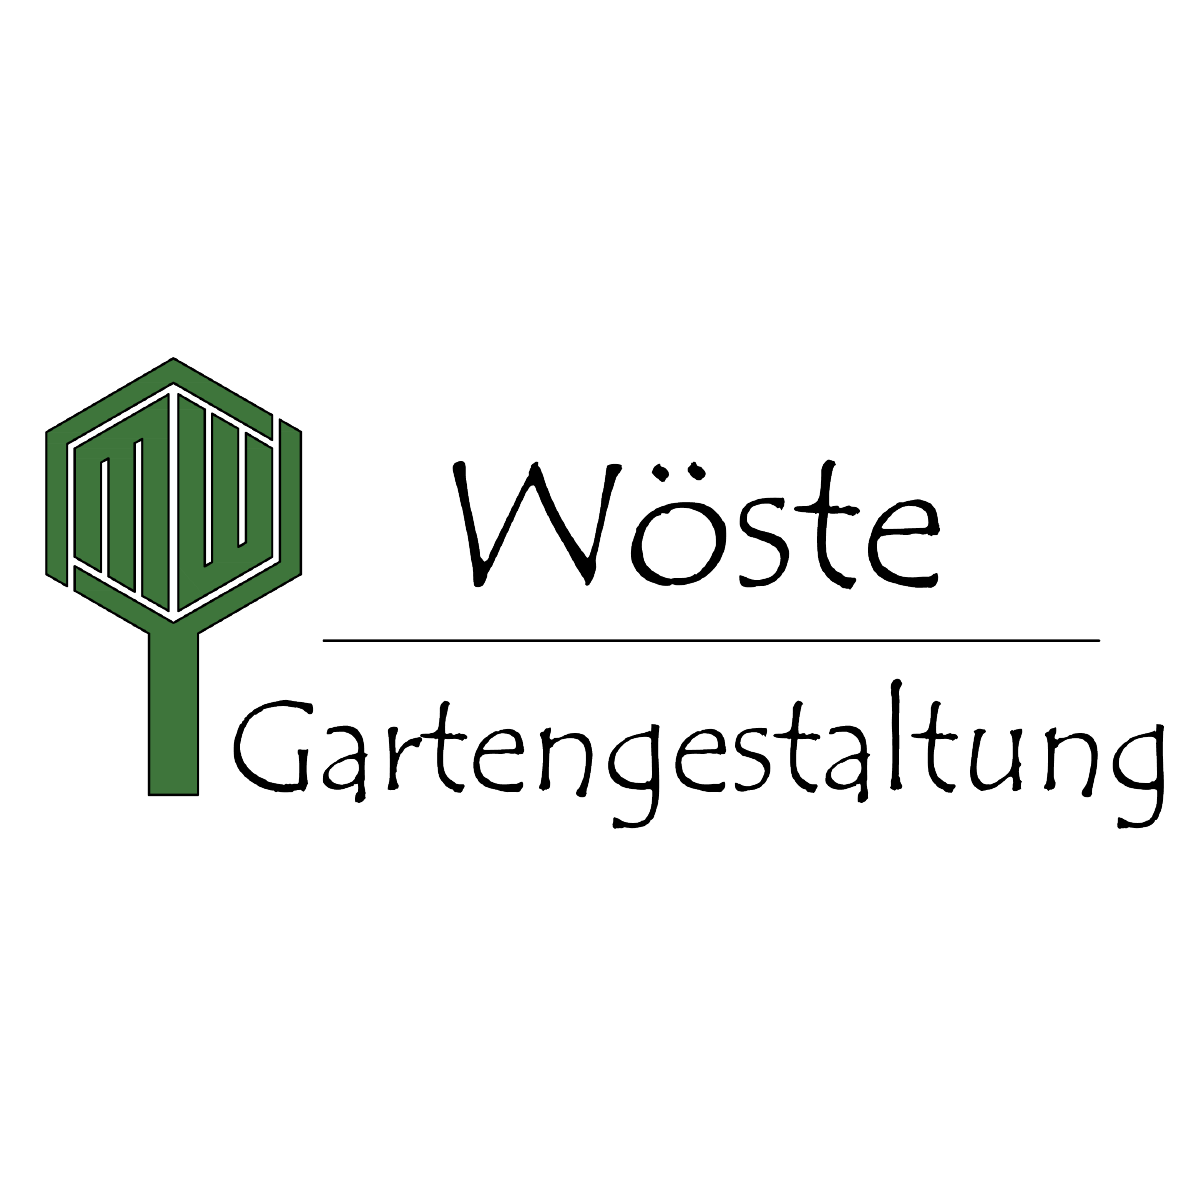 Gartengestaltung Wöste GmbH Logo